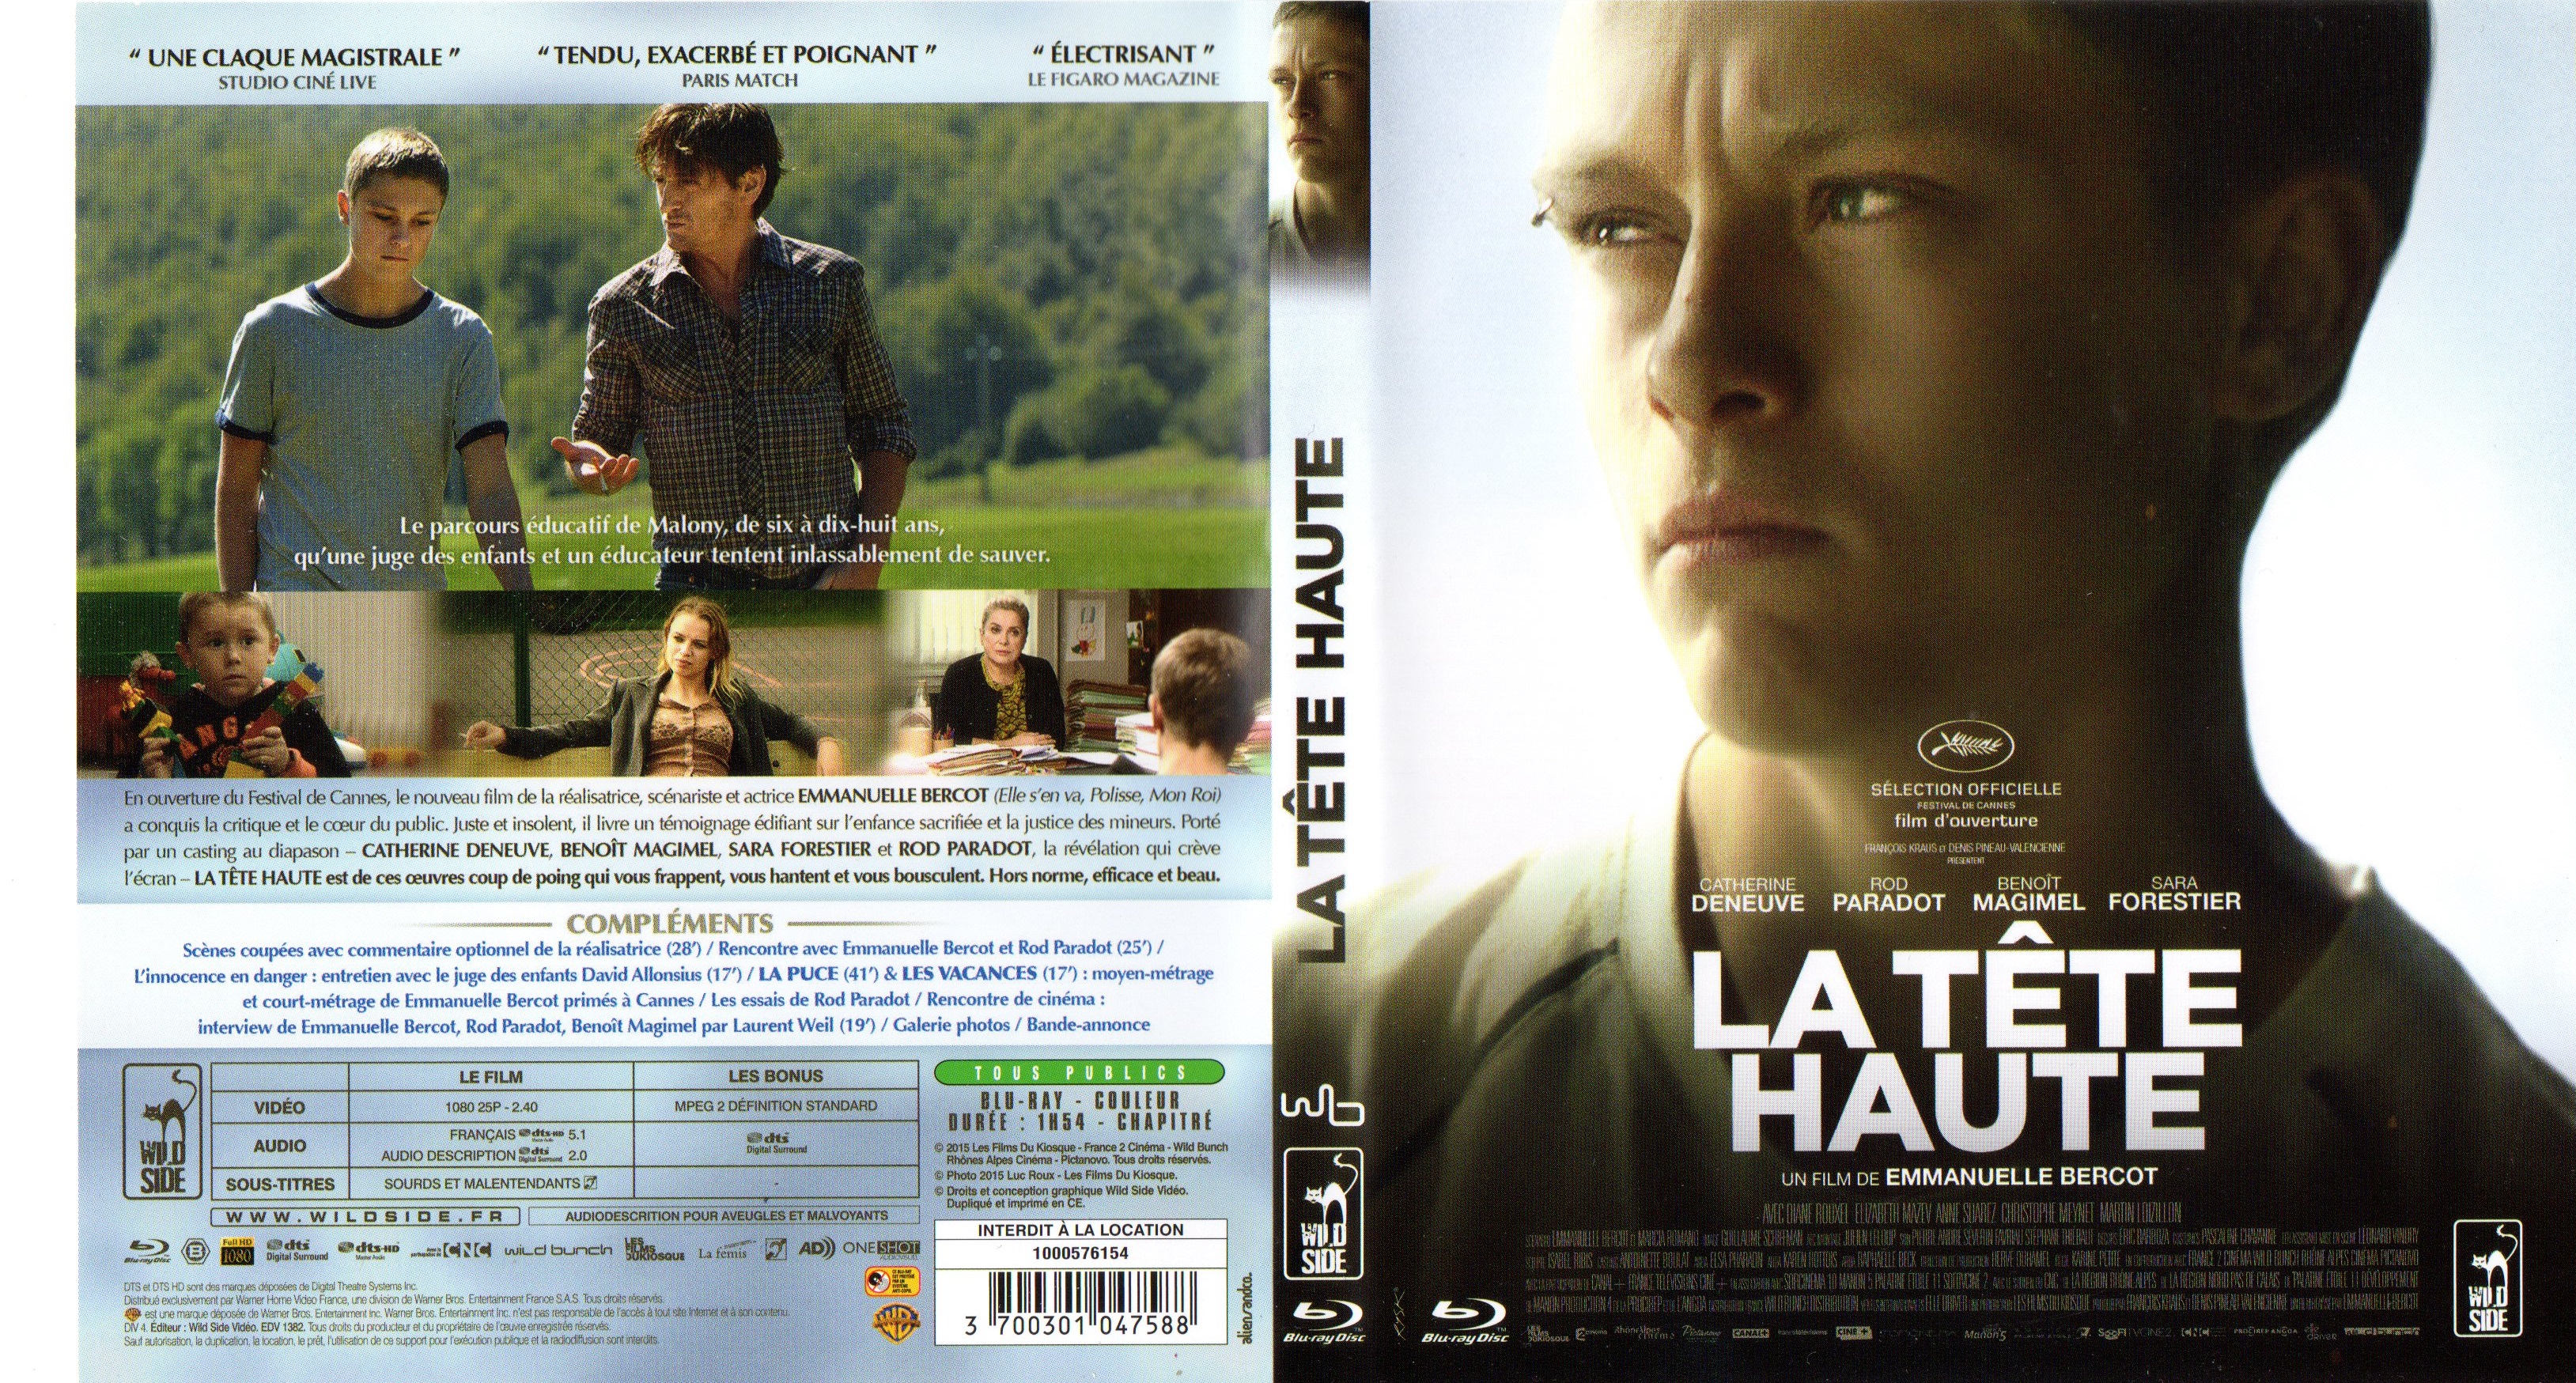 Jaquette DVD La tte haute (BLU-RAY)